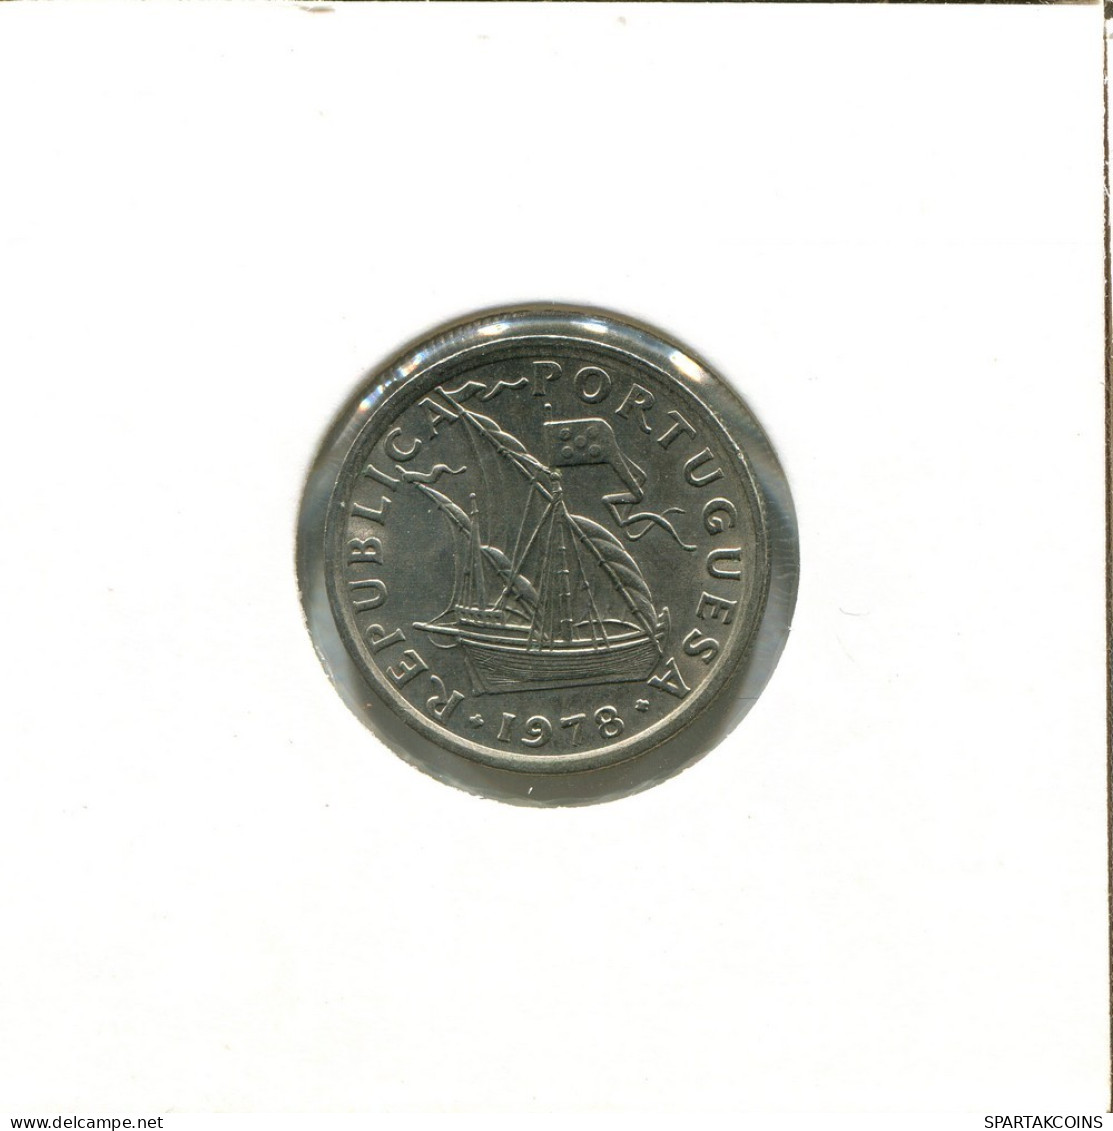 2$50 ESCUDOS 1978 PORTUGAL Coin #AT358.U.A - Portogallo